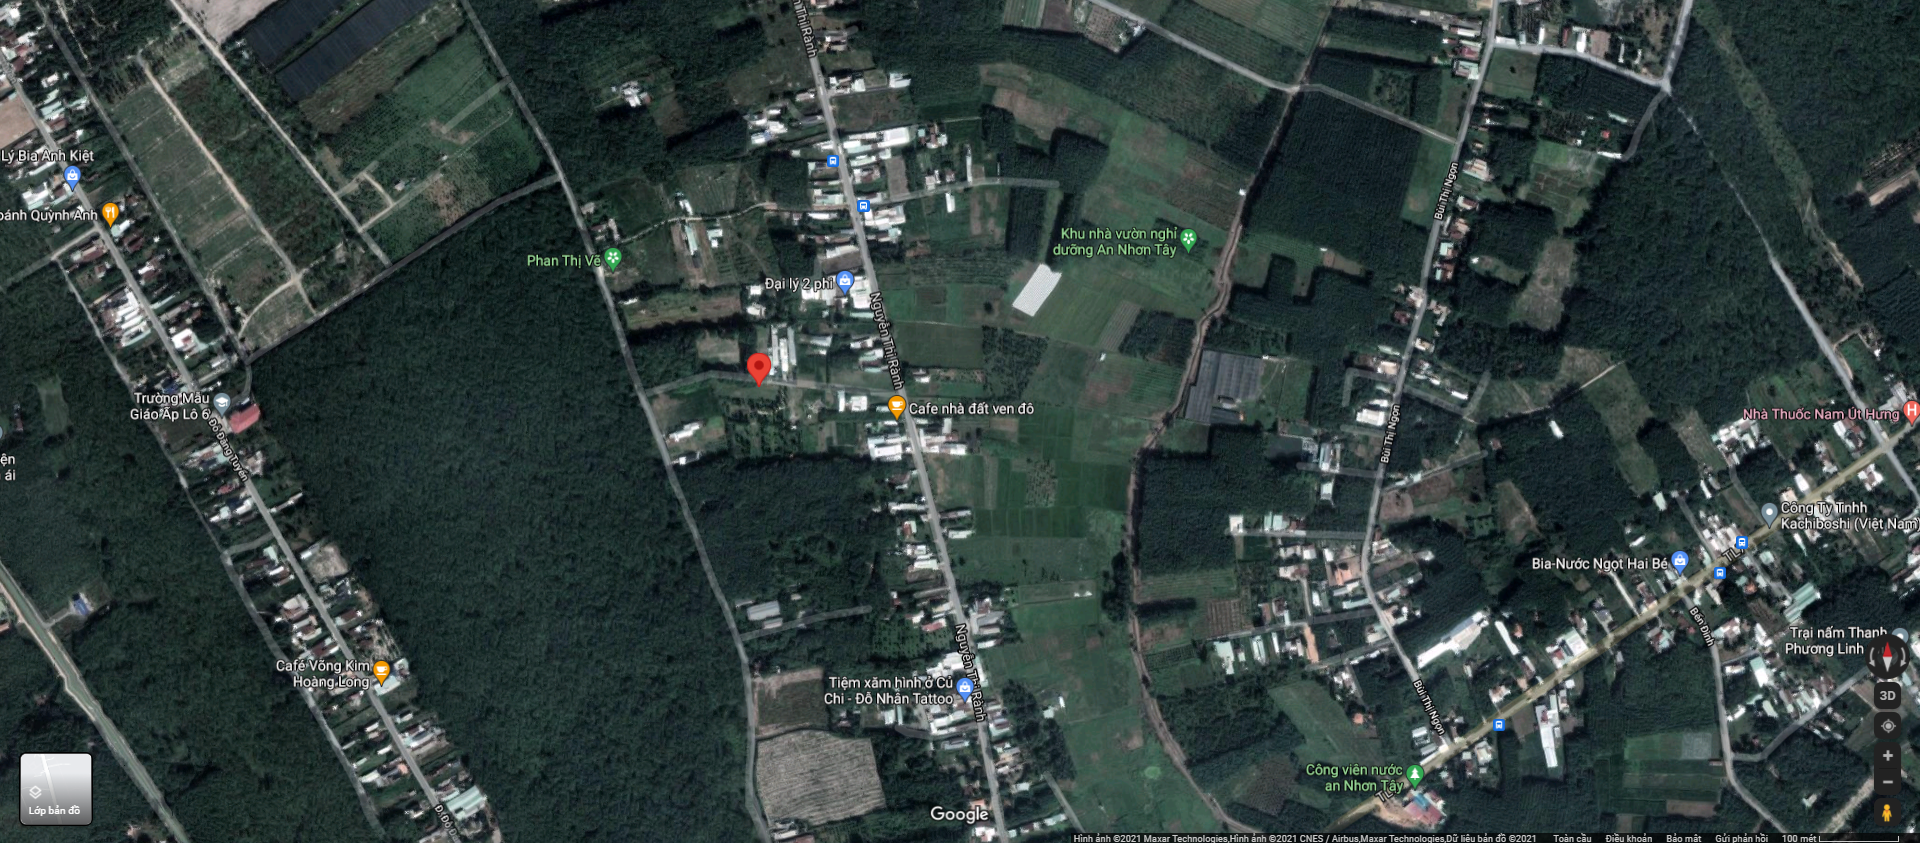 Bán  đất thổ cư 115m² tại, Xã An Nhơn Tây, Huyện Củ Chi, TP. Hồ Chí Minh giá 950 triệu